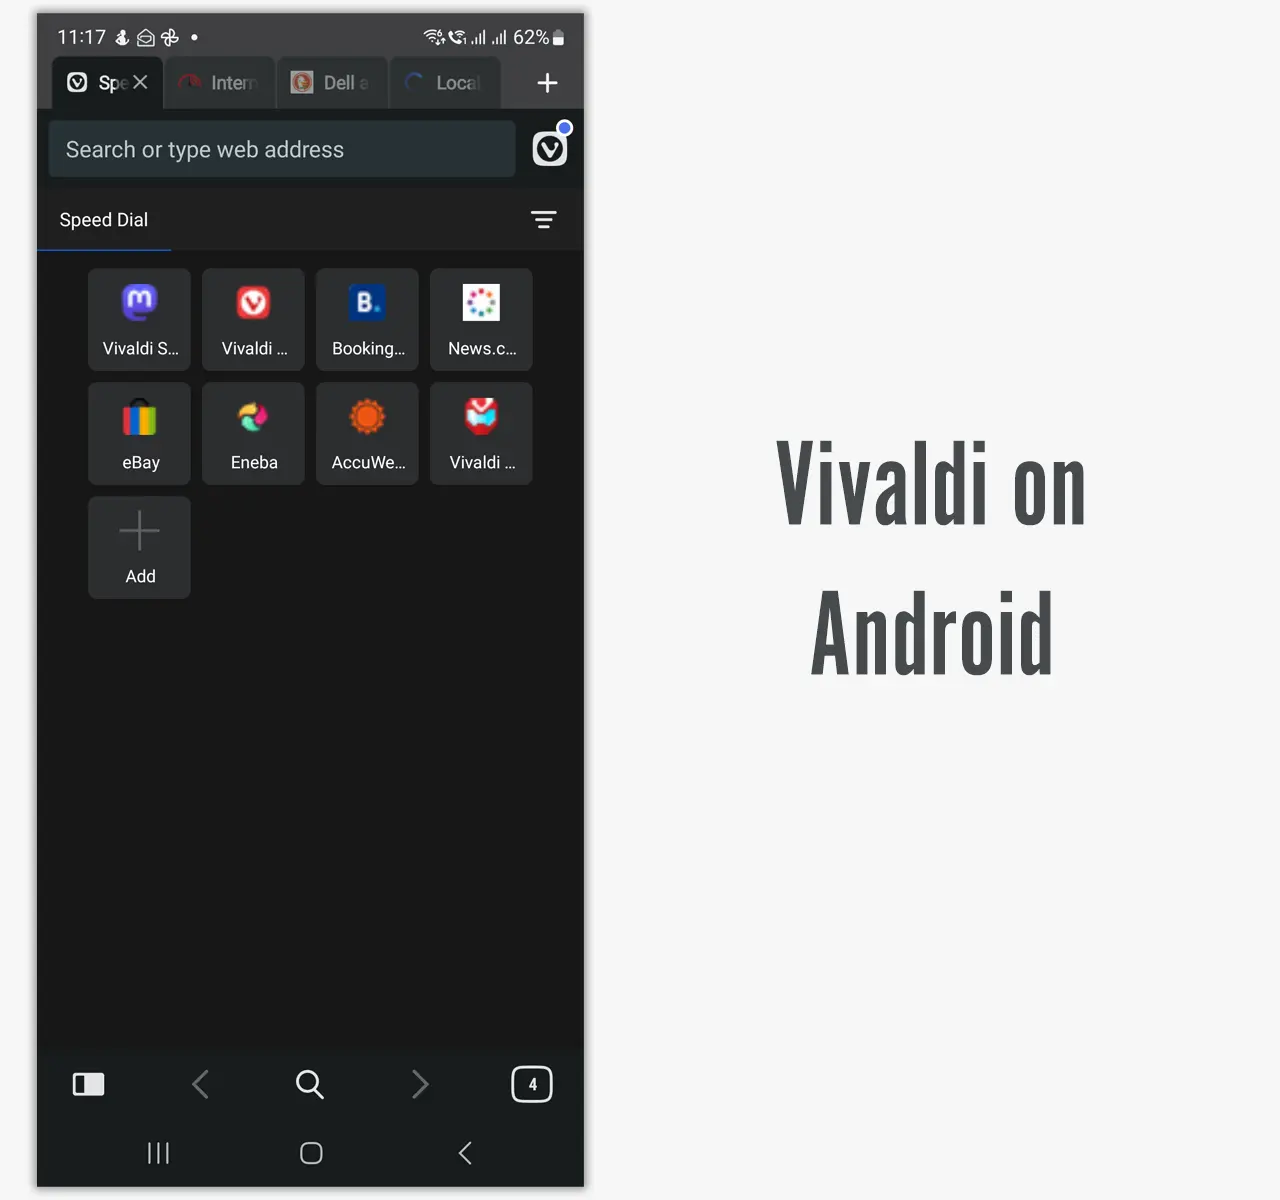 Vivaldi on Android